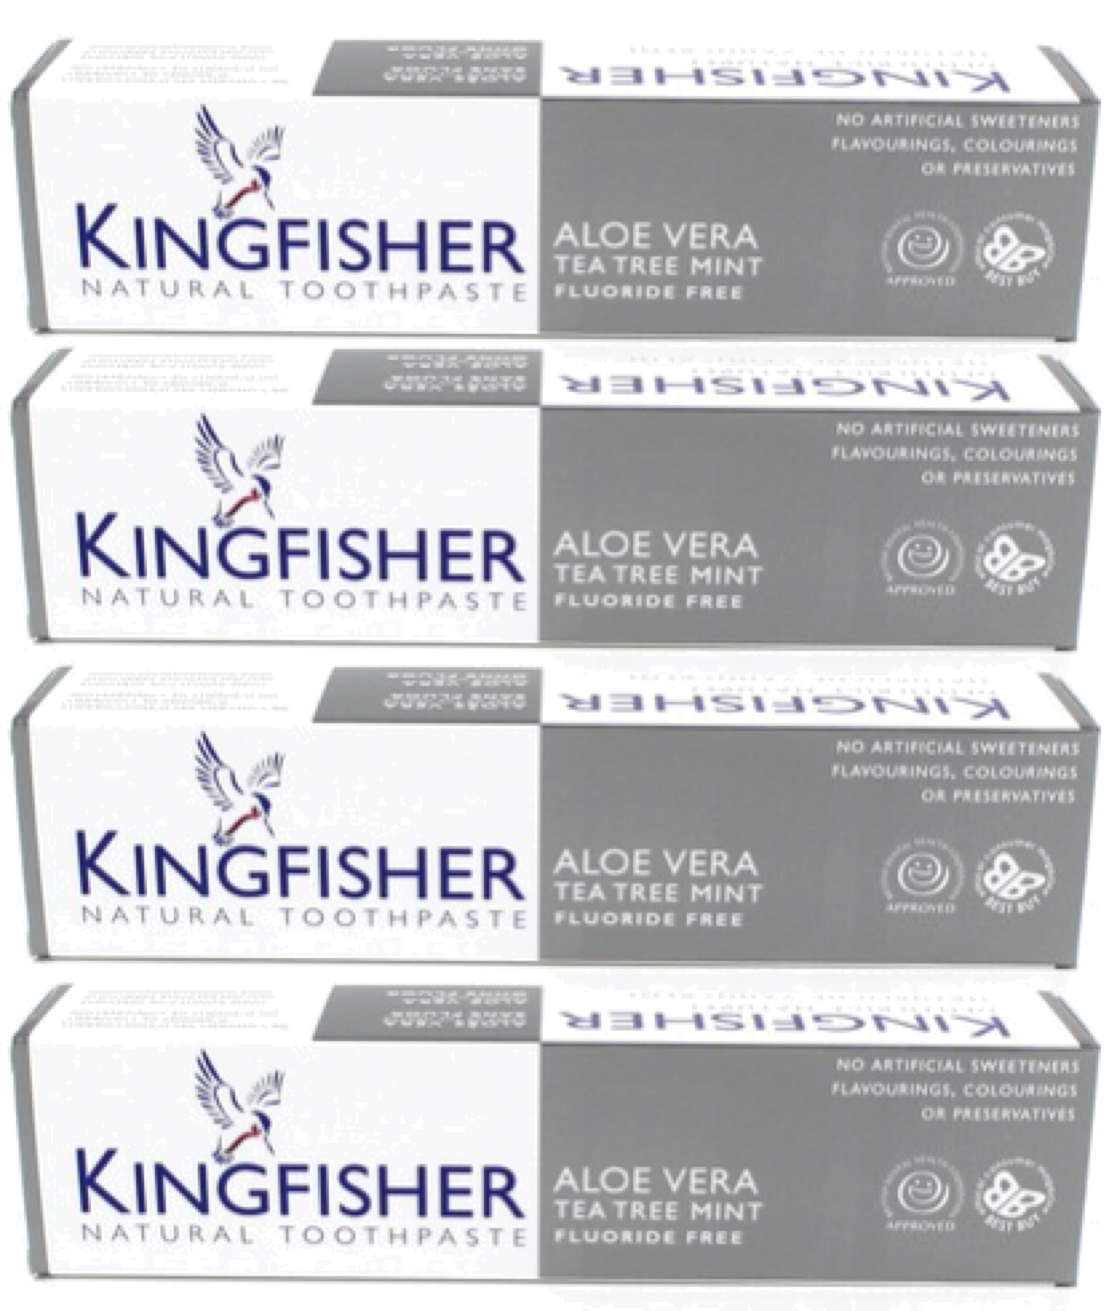 Kingfisher Toothpaste - Aloe Vera Tea Tree Mint Fluoride Free Toothpaste (100ml) - Pack of 4